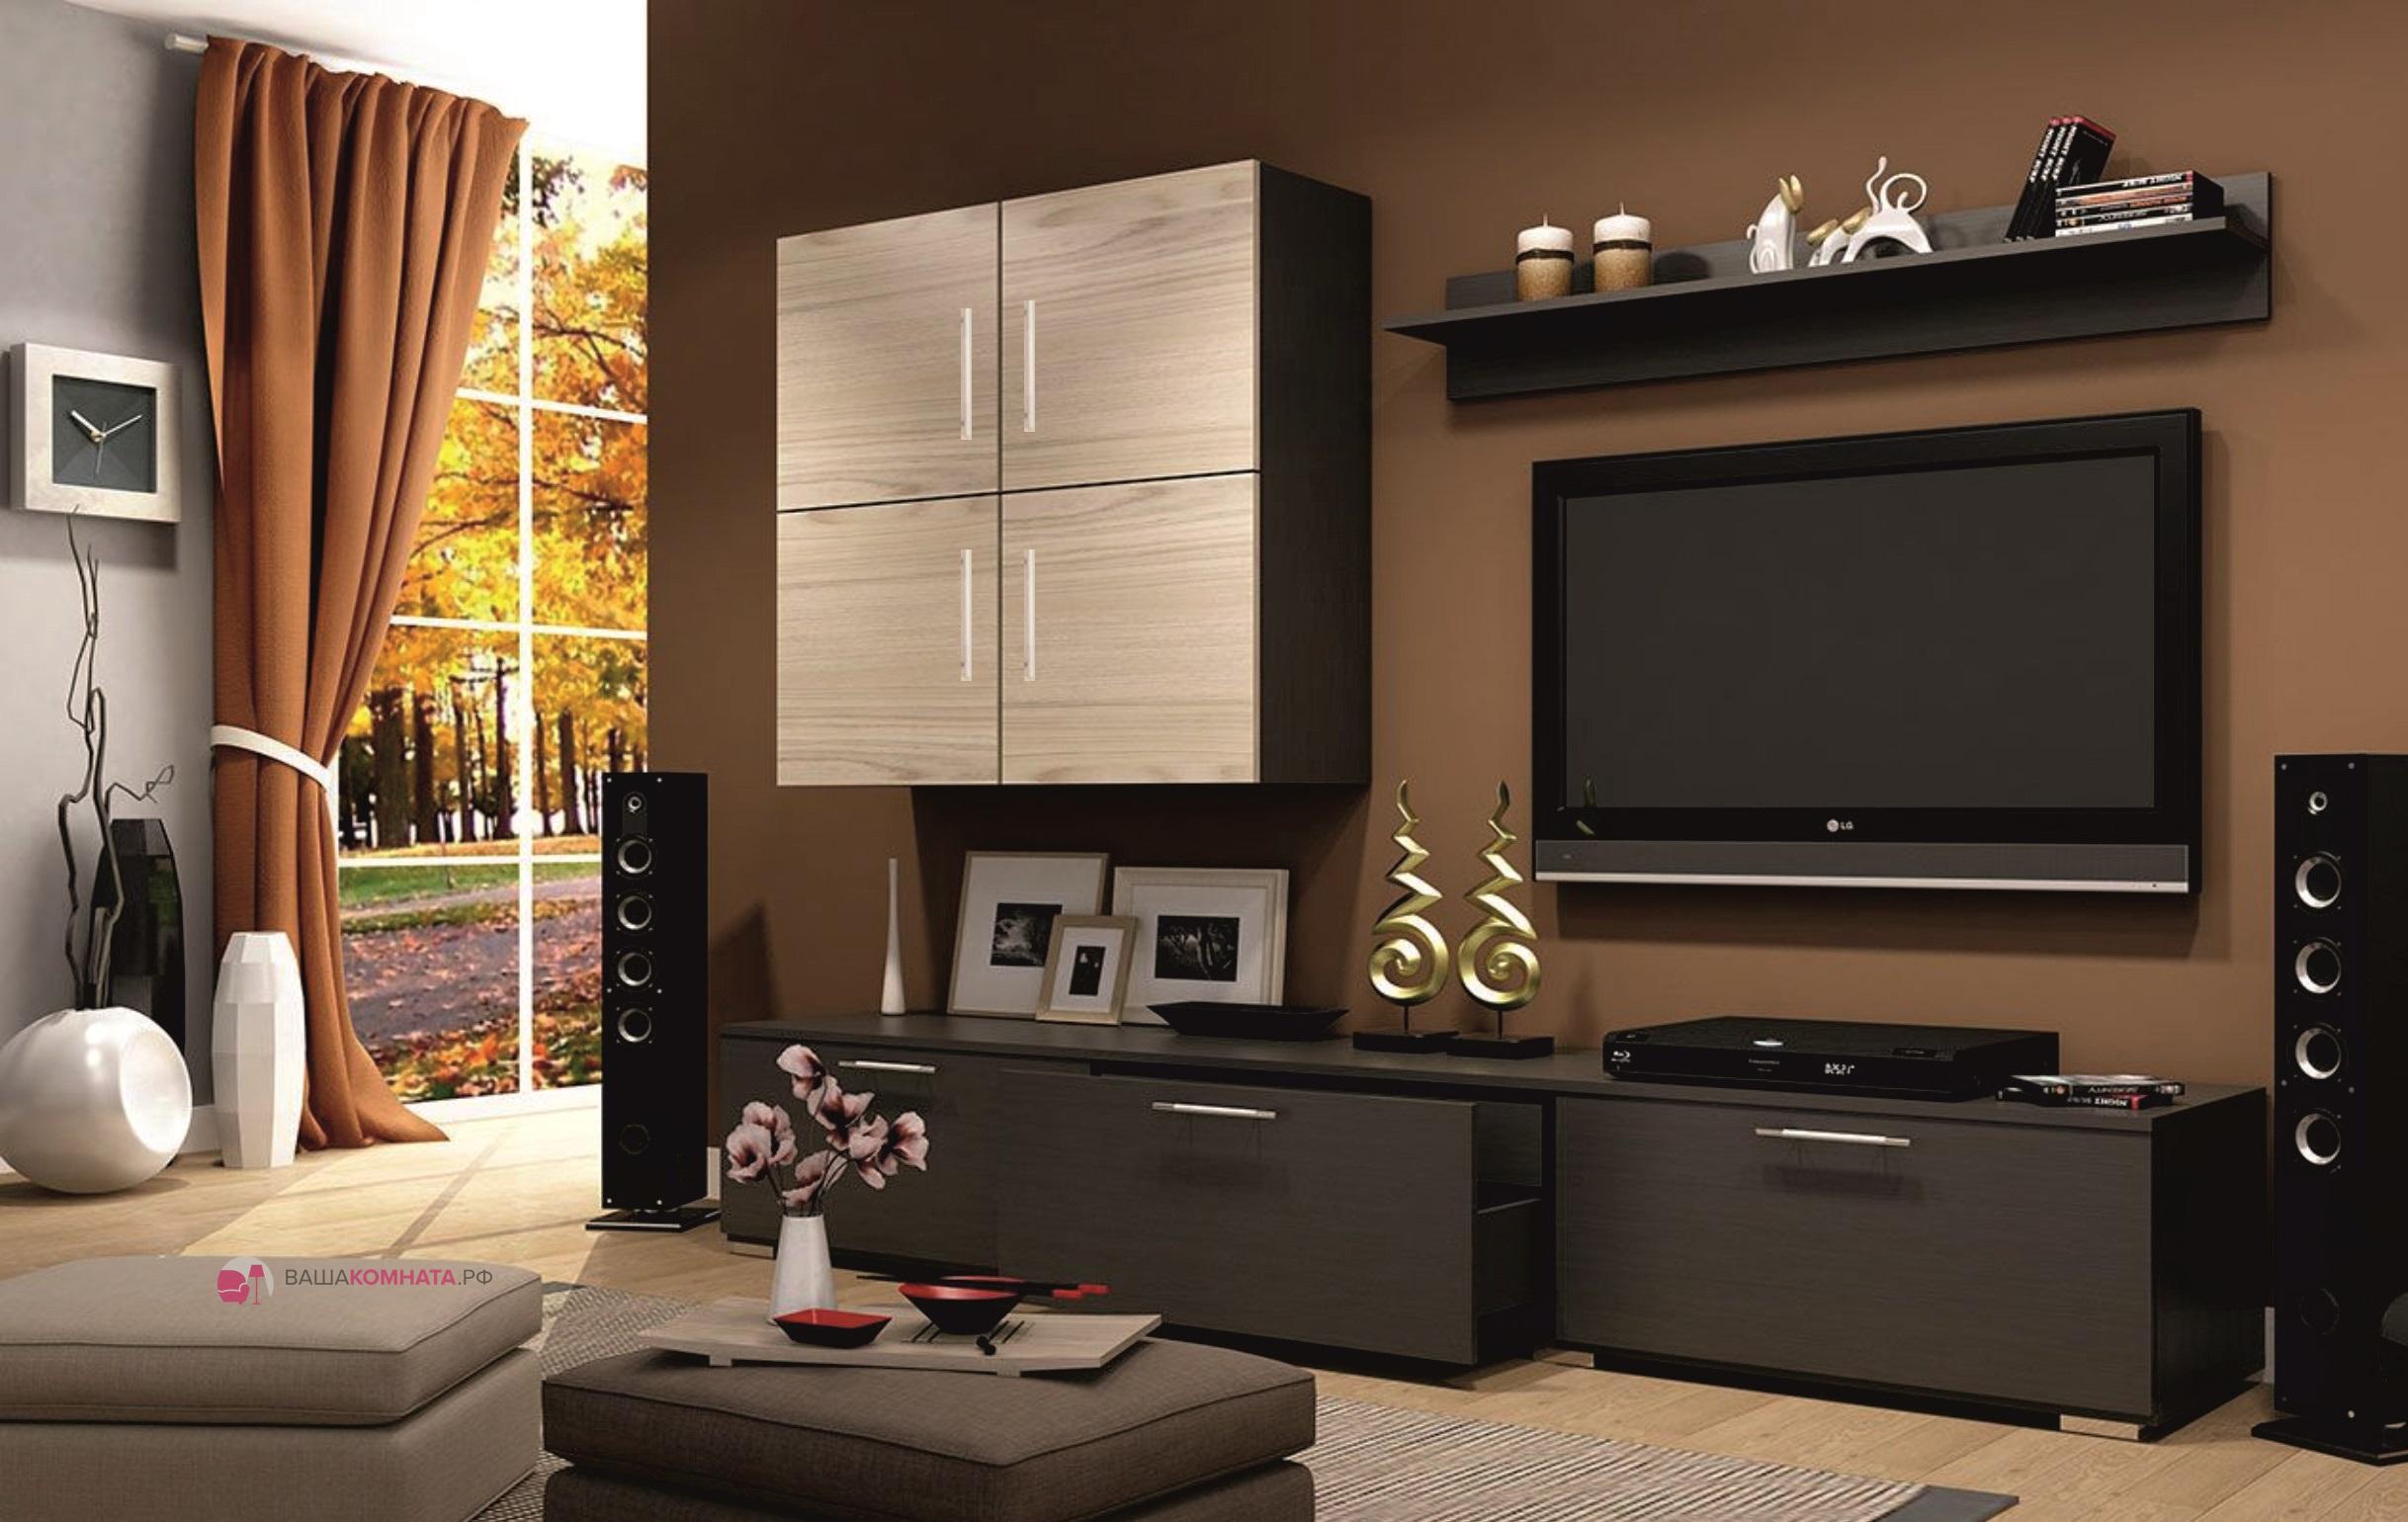 Шкаф в гостиную в современном стиле для одежды с телевизором